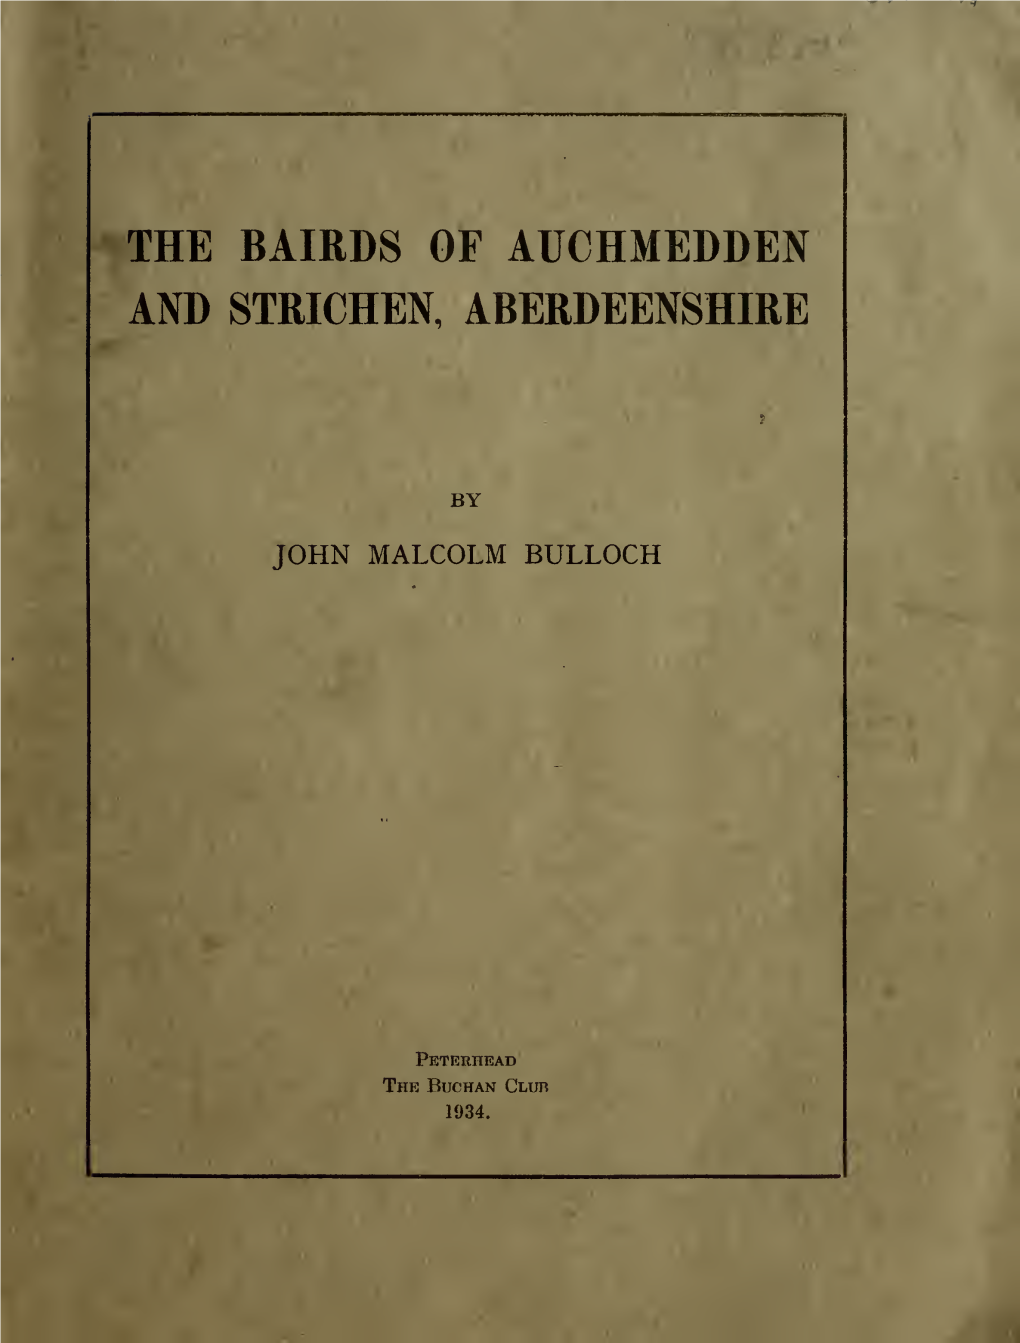 The Bairds of Auchmedden and Strichen, Aberdeenshire